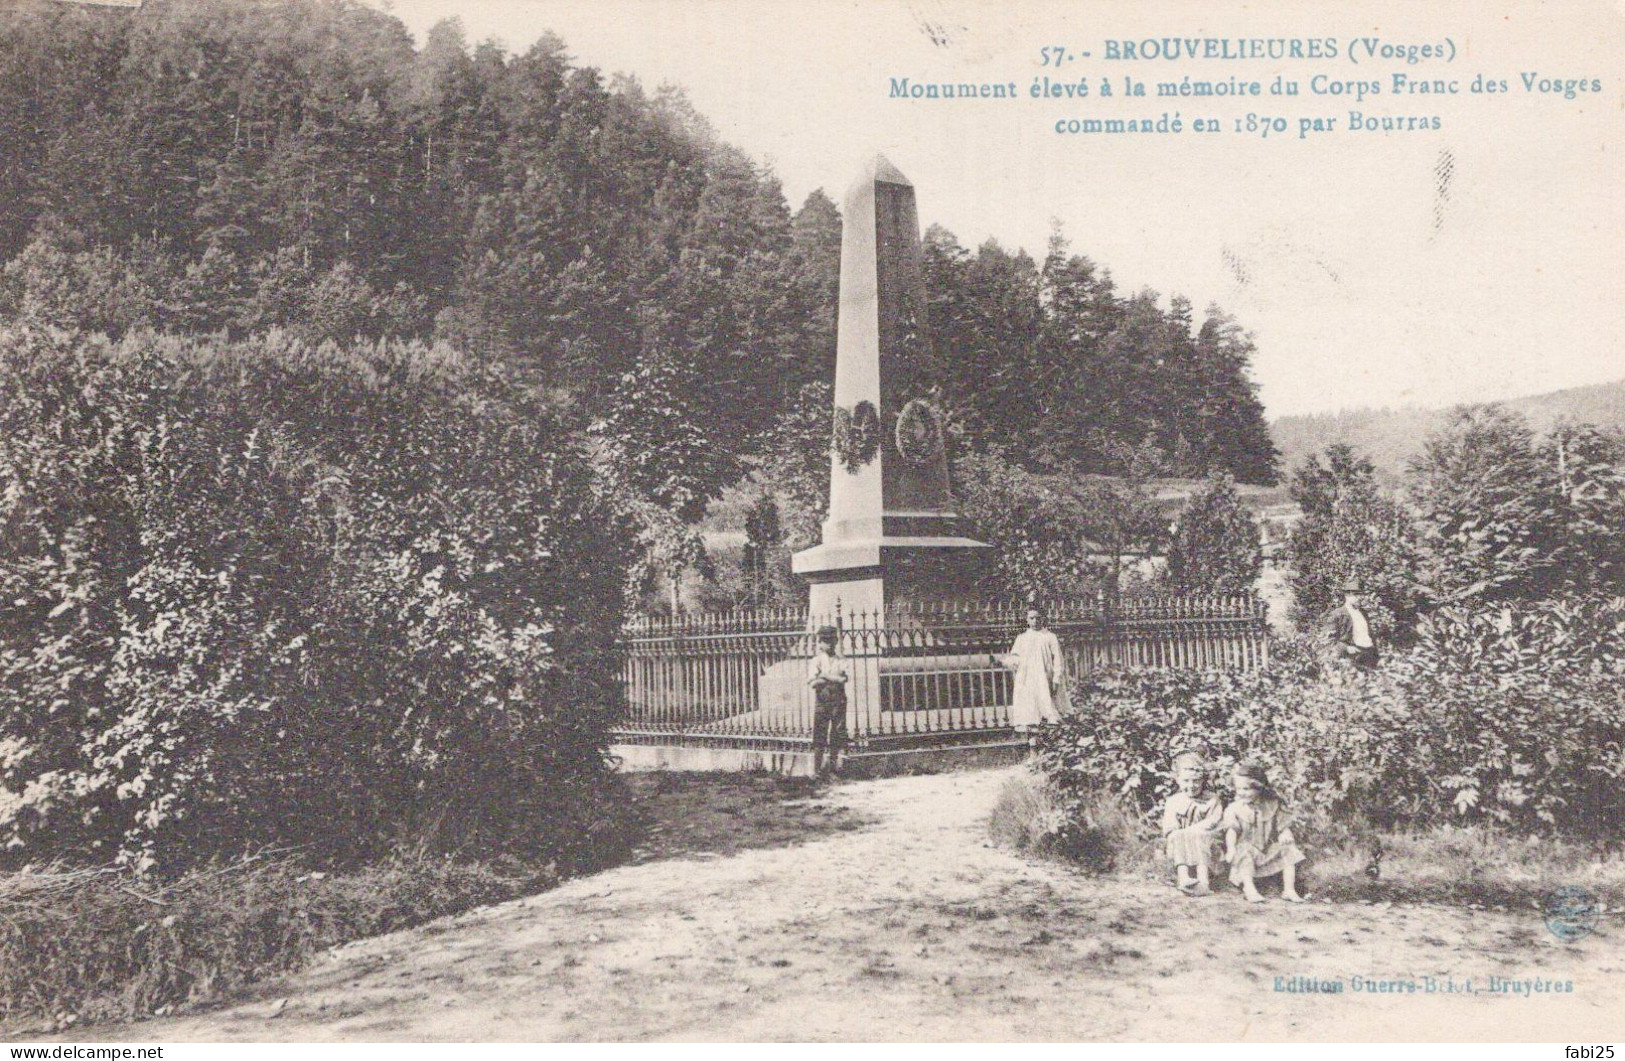 BROUVELIEURES MONUMENT ELEVE A LA MEMOIRE DU CORPS FRANC DES VOSGES - Brouvelieures